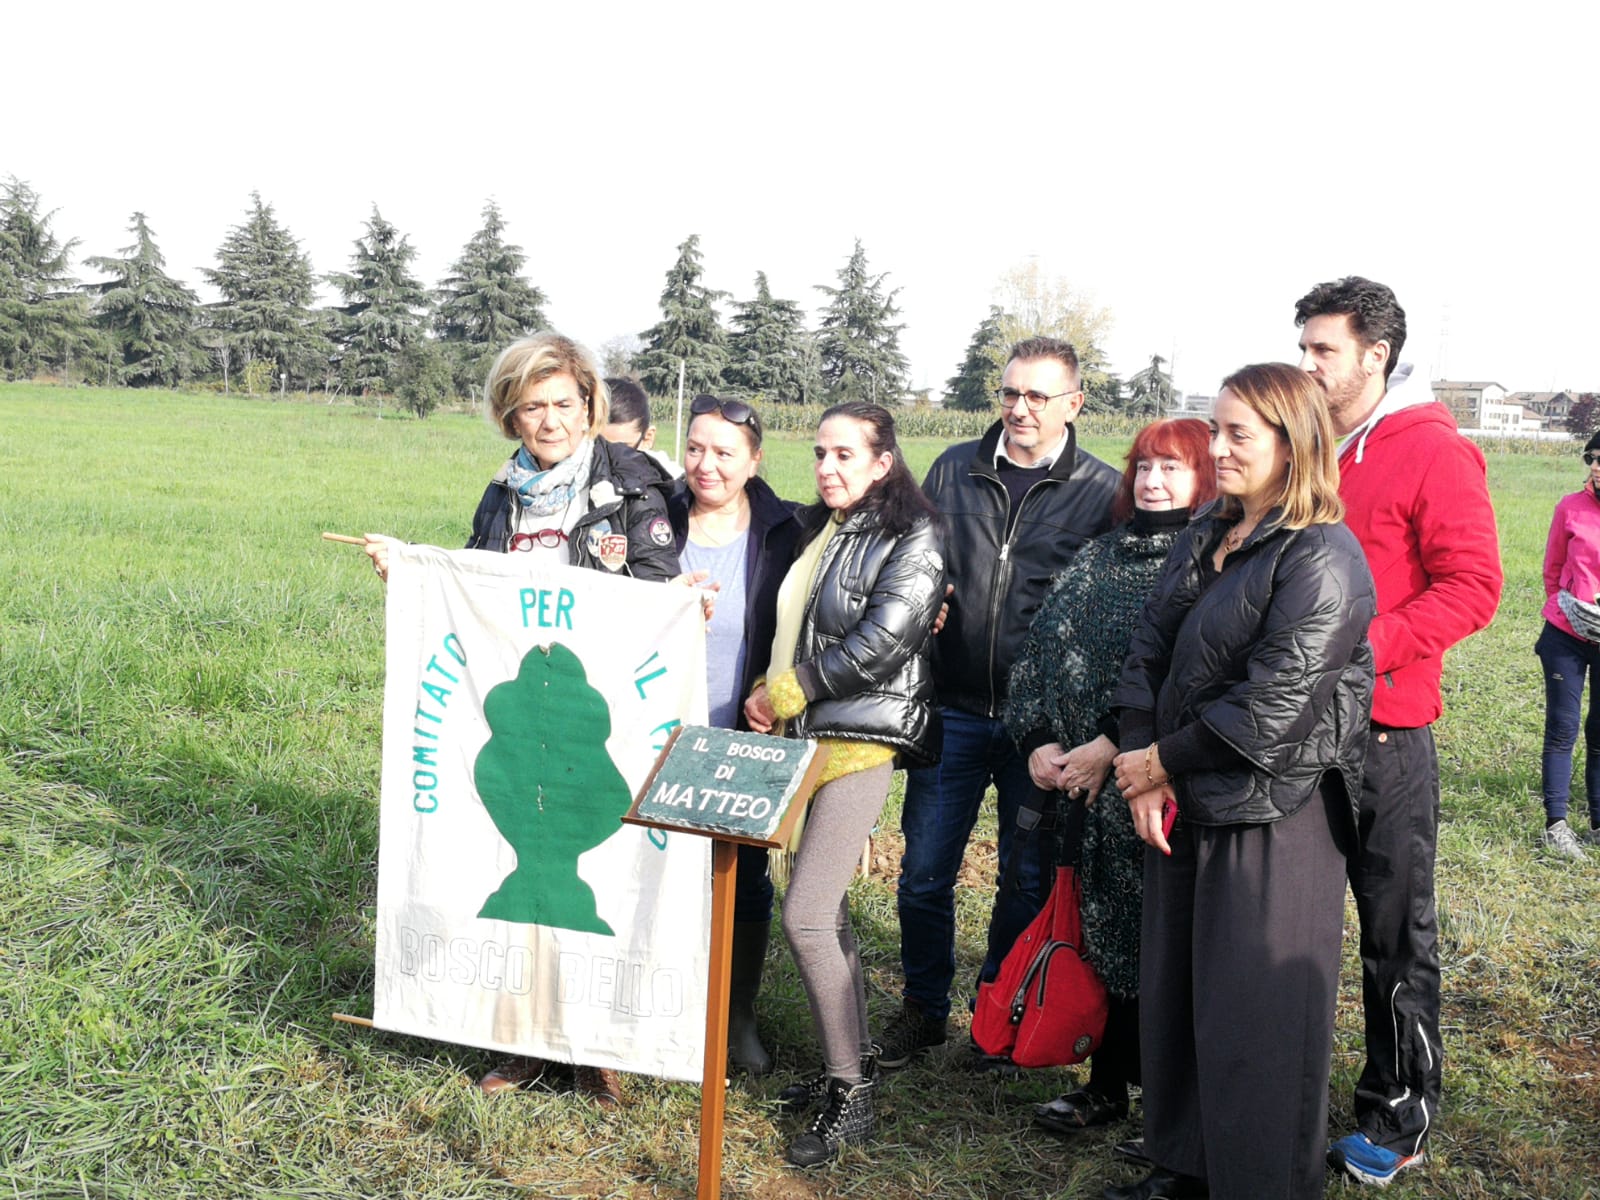 Agrate Brianza oasi ecologica vasca volano messa a dimora prima pianta per creare bosco in memoria di Matteo Barattieri di Monza